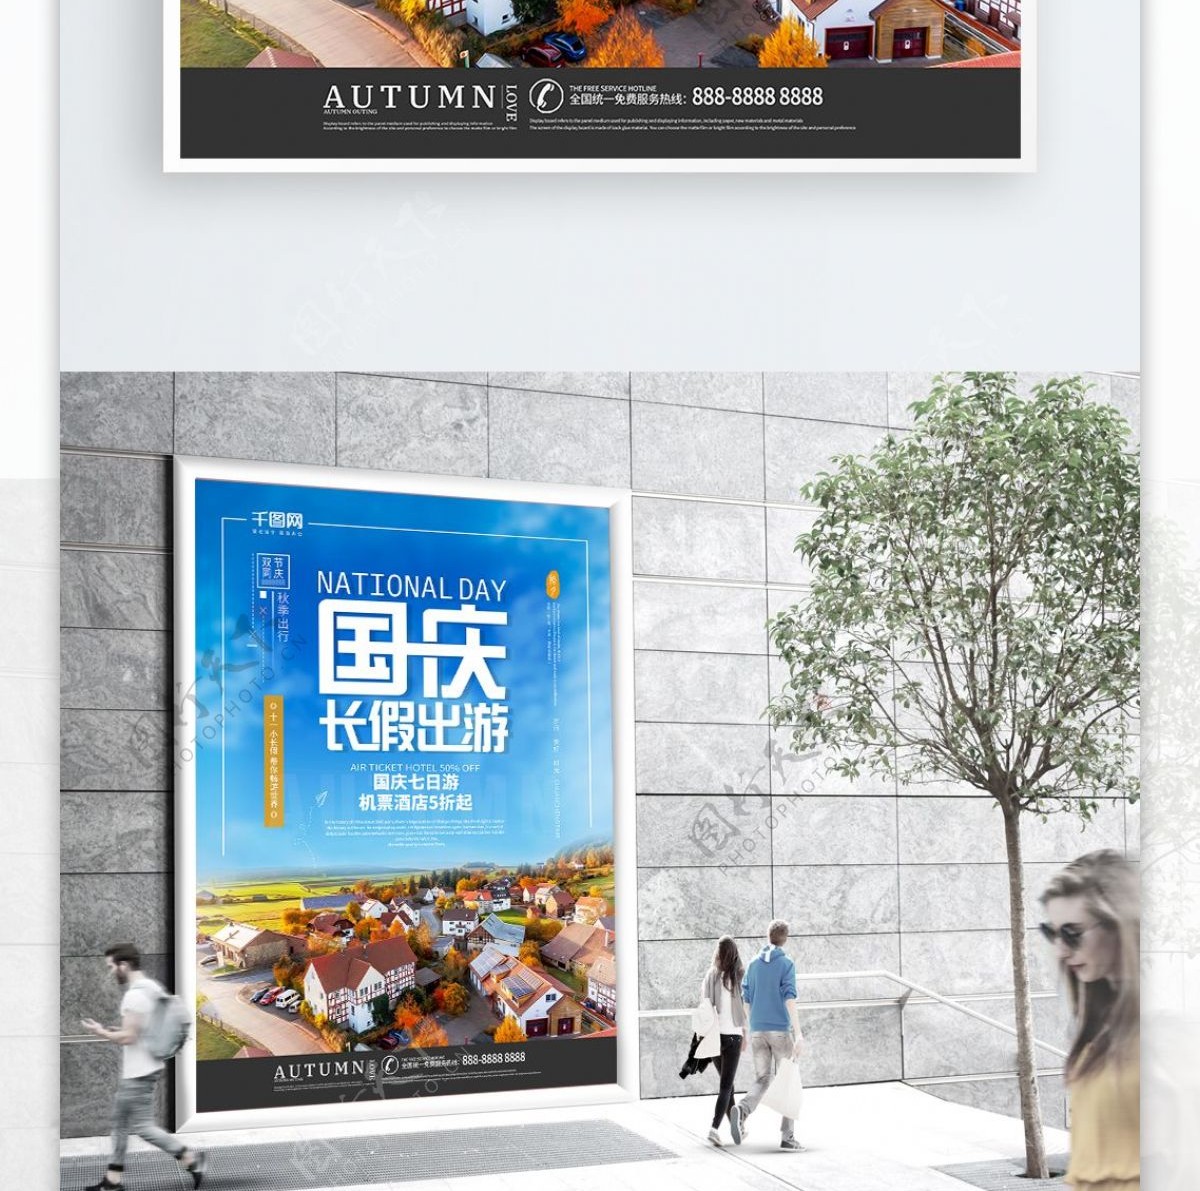 创意海报秋季出游国庆节出游城市宣传海报